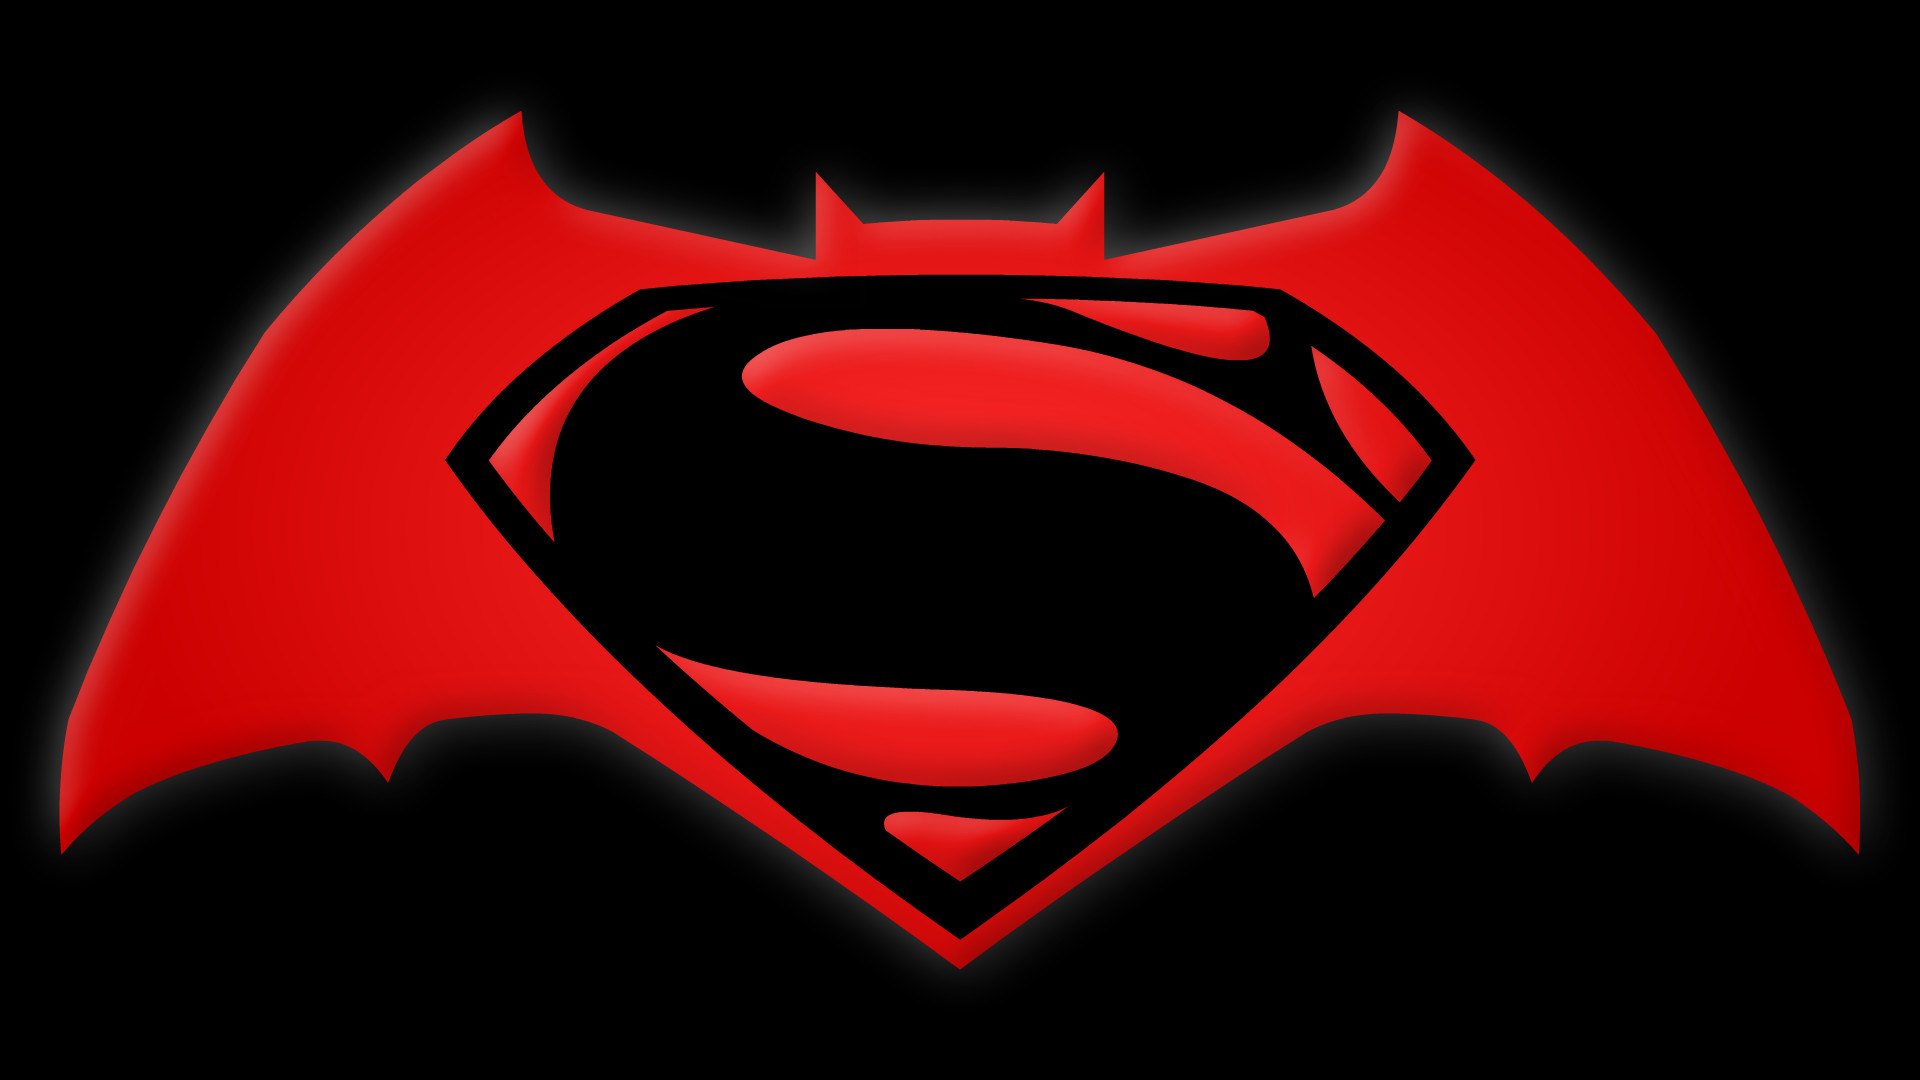 Batman v Superman Symbol by Yurtigo Batman v Superman Symbol by Yurtigo